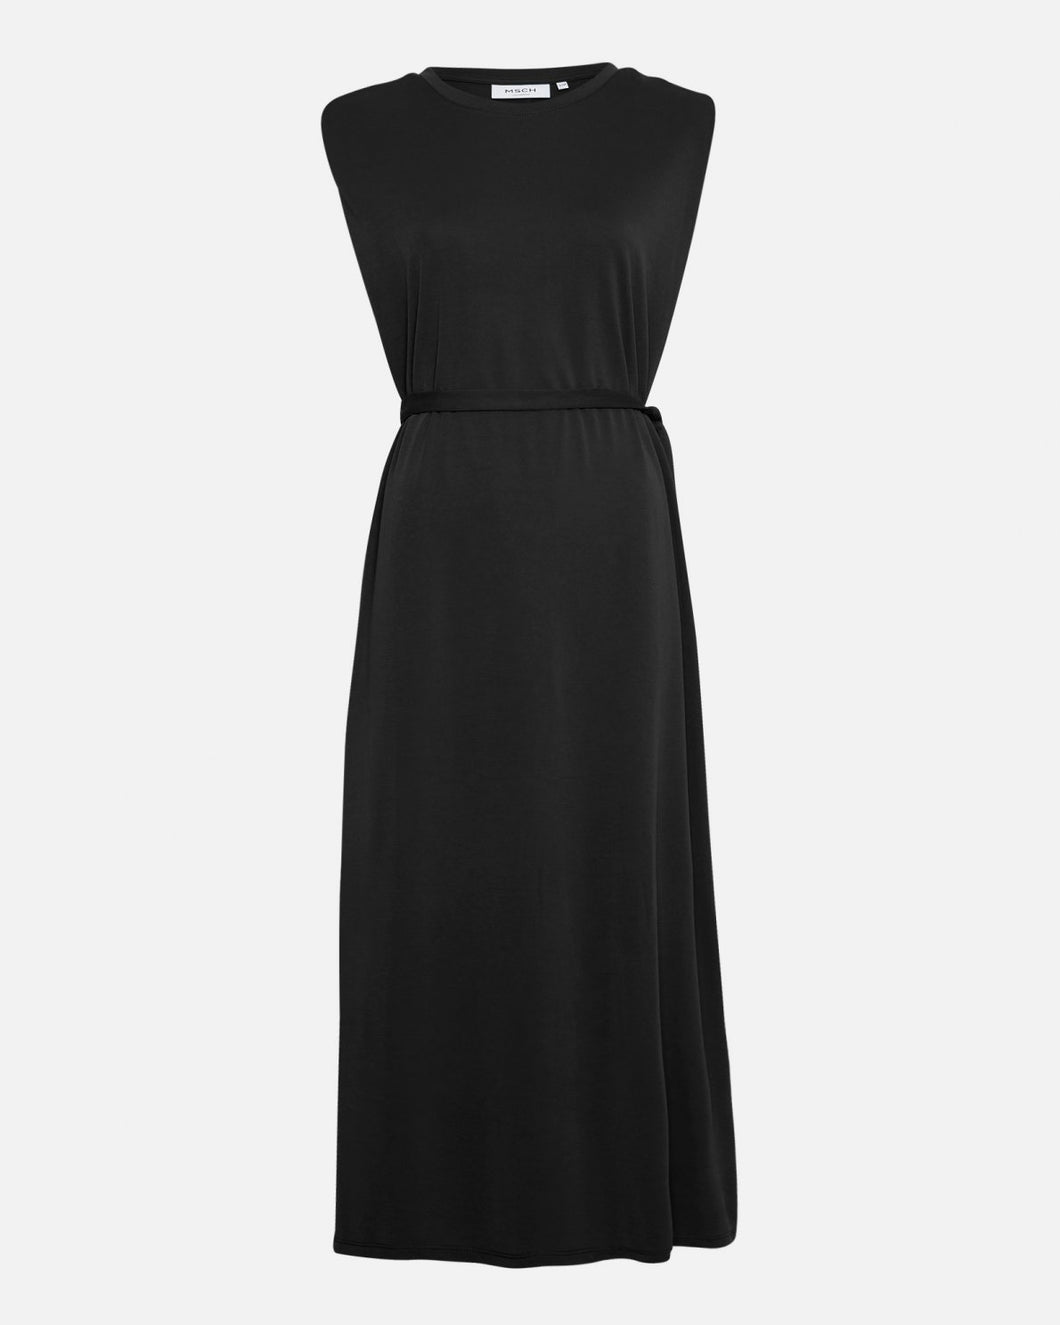 MSCHBirdia Lynette SL Dress, black